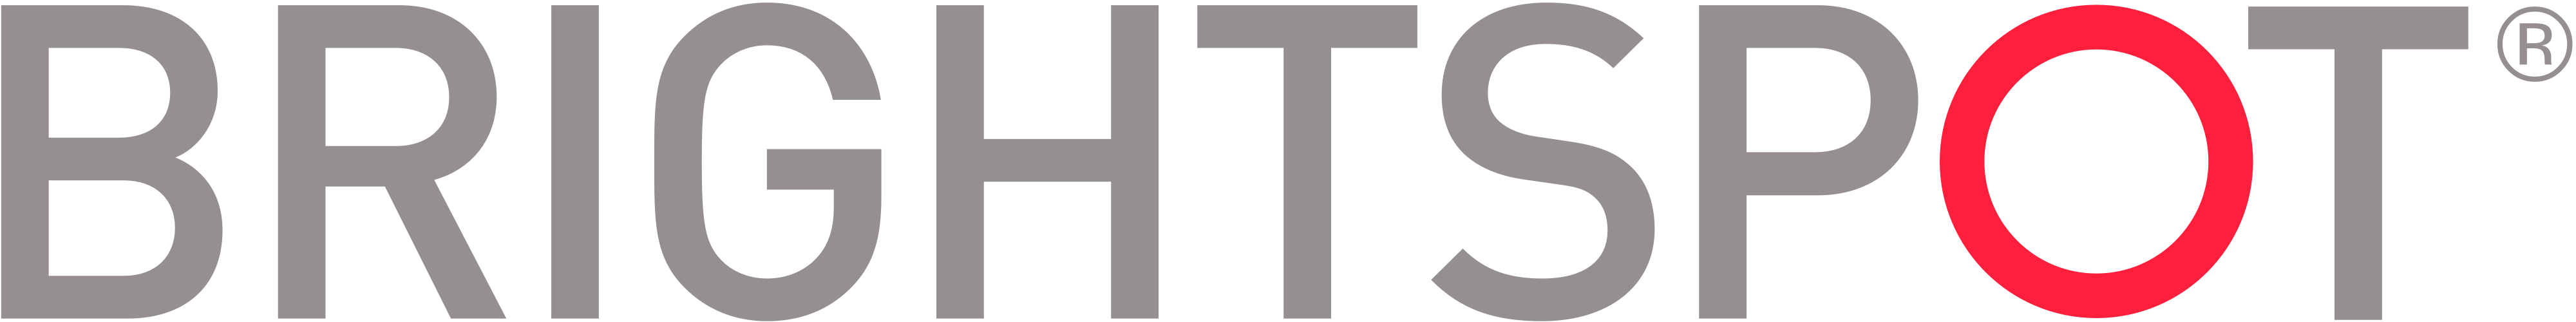 Brightspot-logo (1)